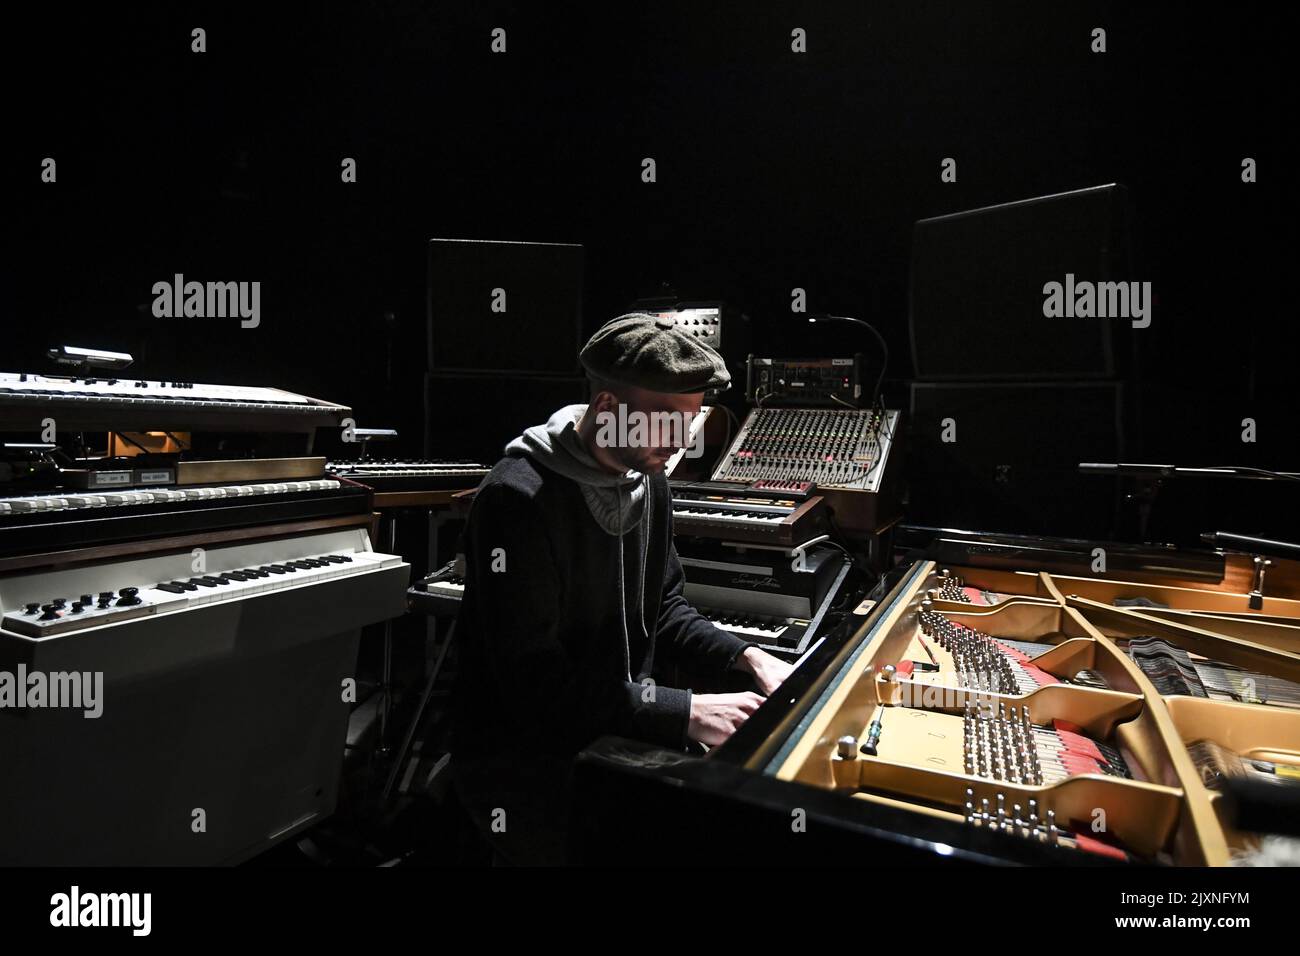 Le pianiste et compositeur allemand Nils Frahm à ses instruments pose pour  des photographies avant son concert à Canberra, mercredi, 10 octobre 2018.  Nils Frahm, connu pour combiner la musique classique et